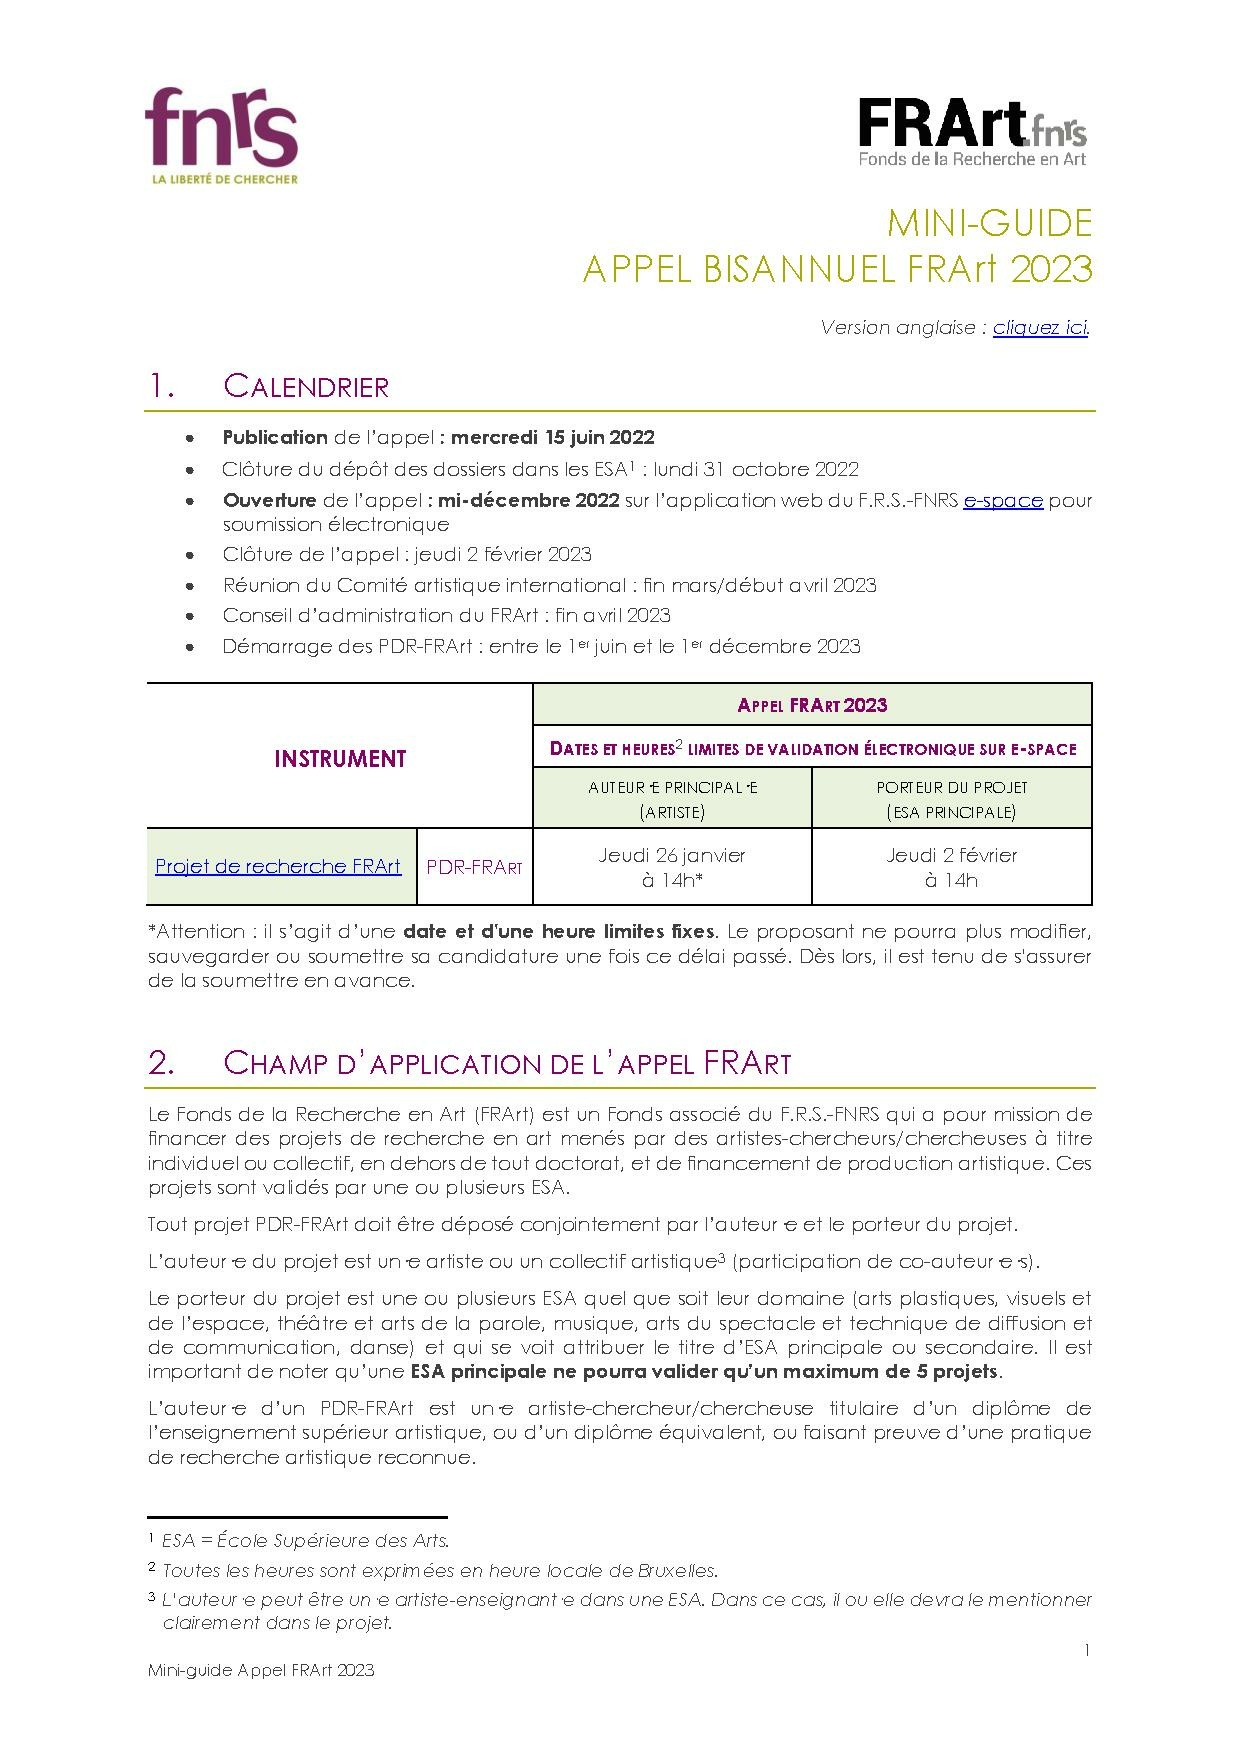 FRArt Mini-guide 2023 FR.pdf